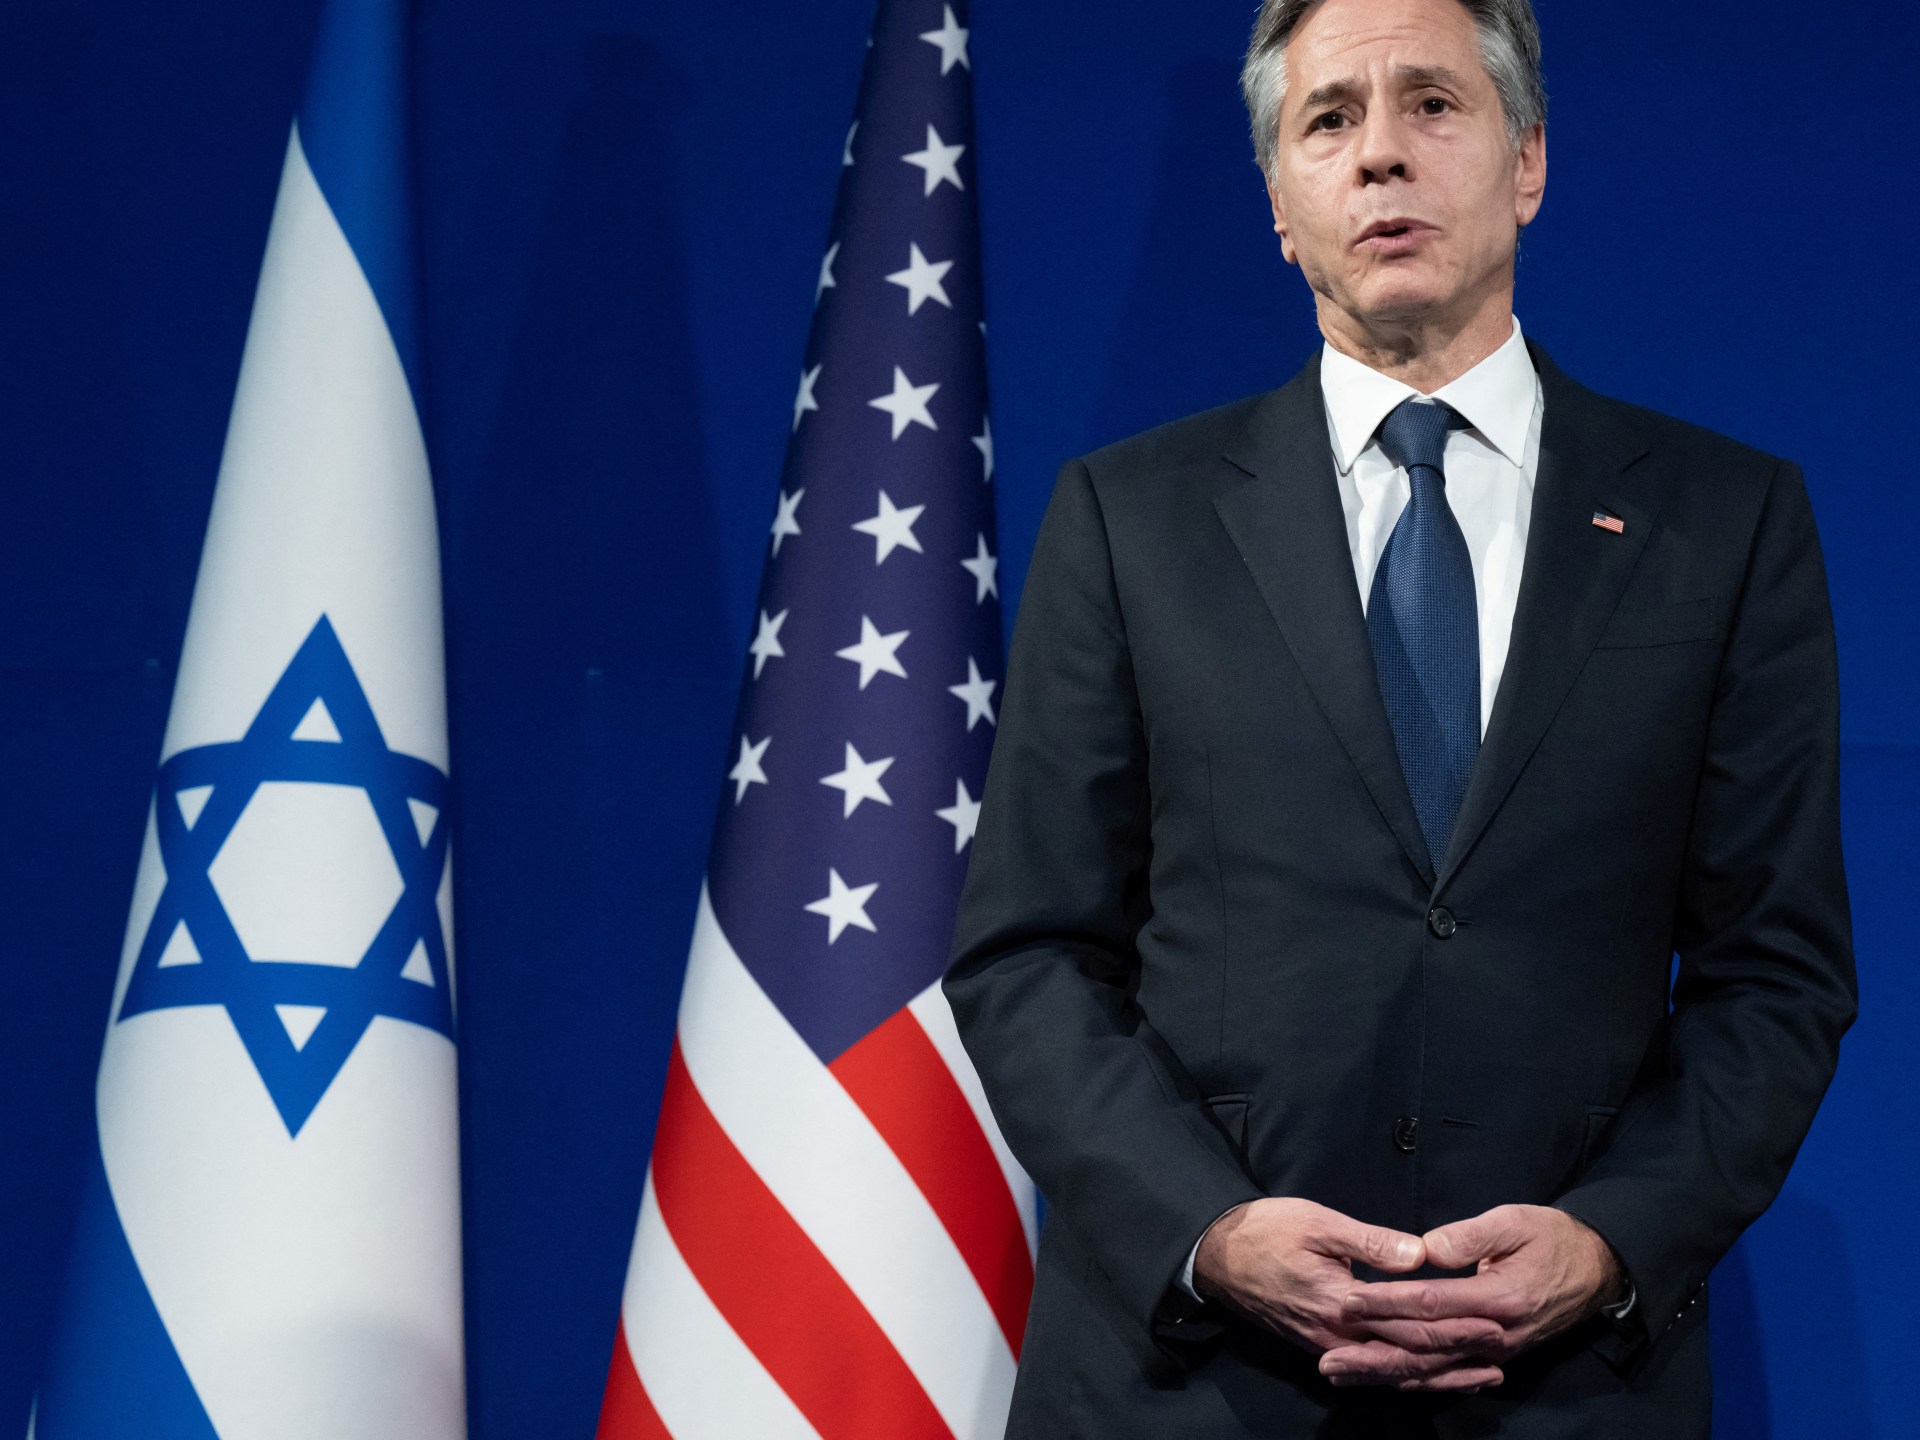 Stany Zjednoczone wysyłają swoich najważniejszych dyplomatów na Bliski Wschód w związku ze wzrostem napięć regionalnych |  Wiadomości o izraelskiej wojnie w Gazie